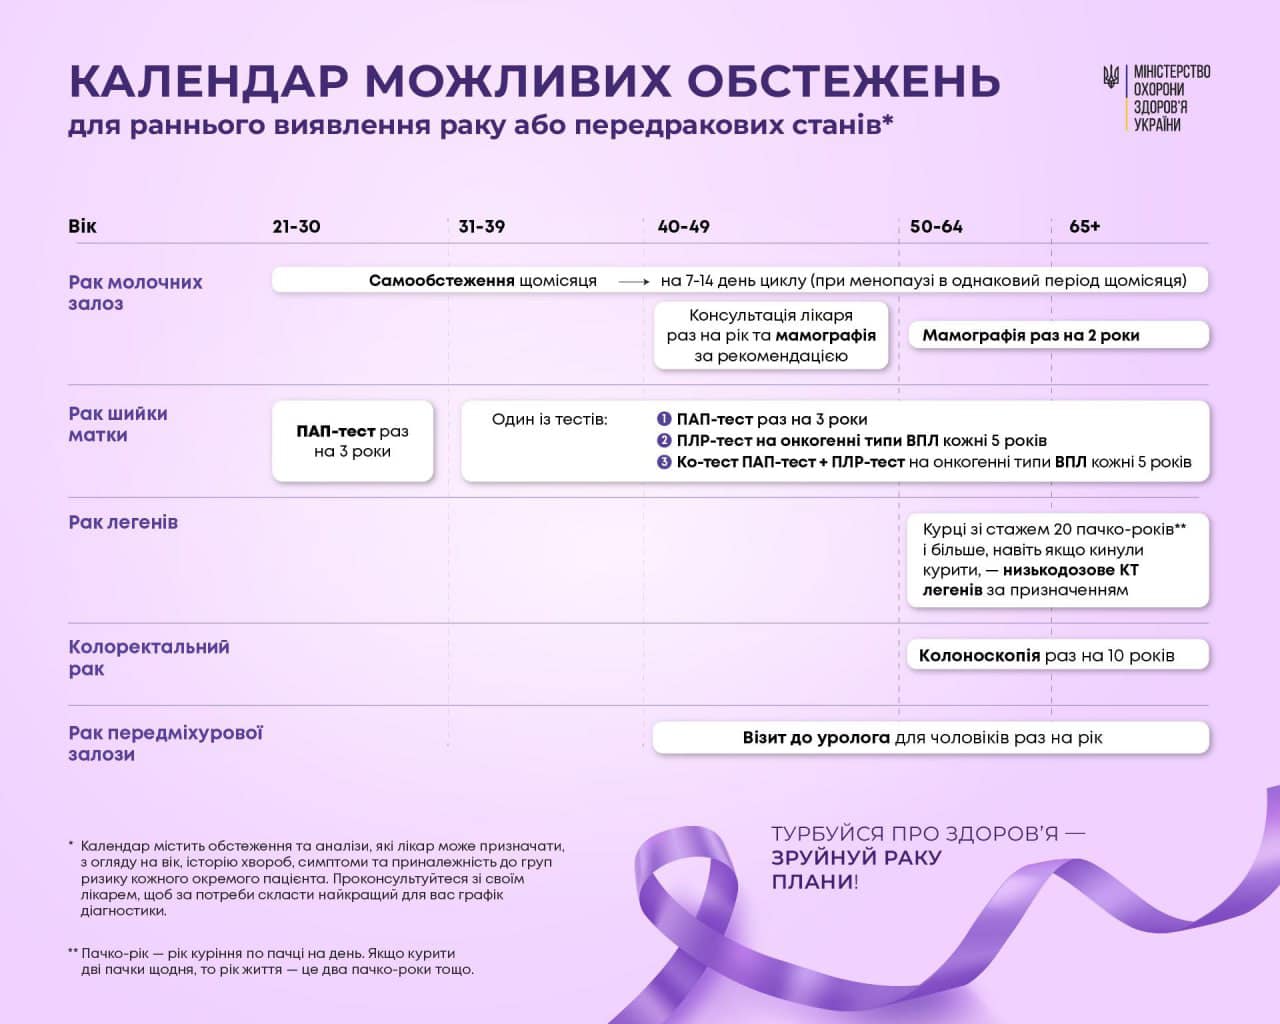 інфографіка "Календар можливих обстежень для раннього виявлення раку або передракових станів"